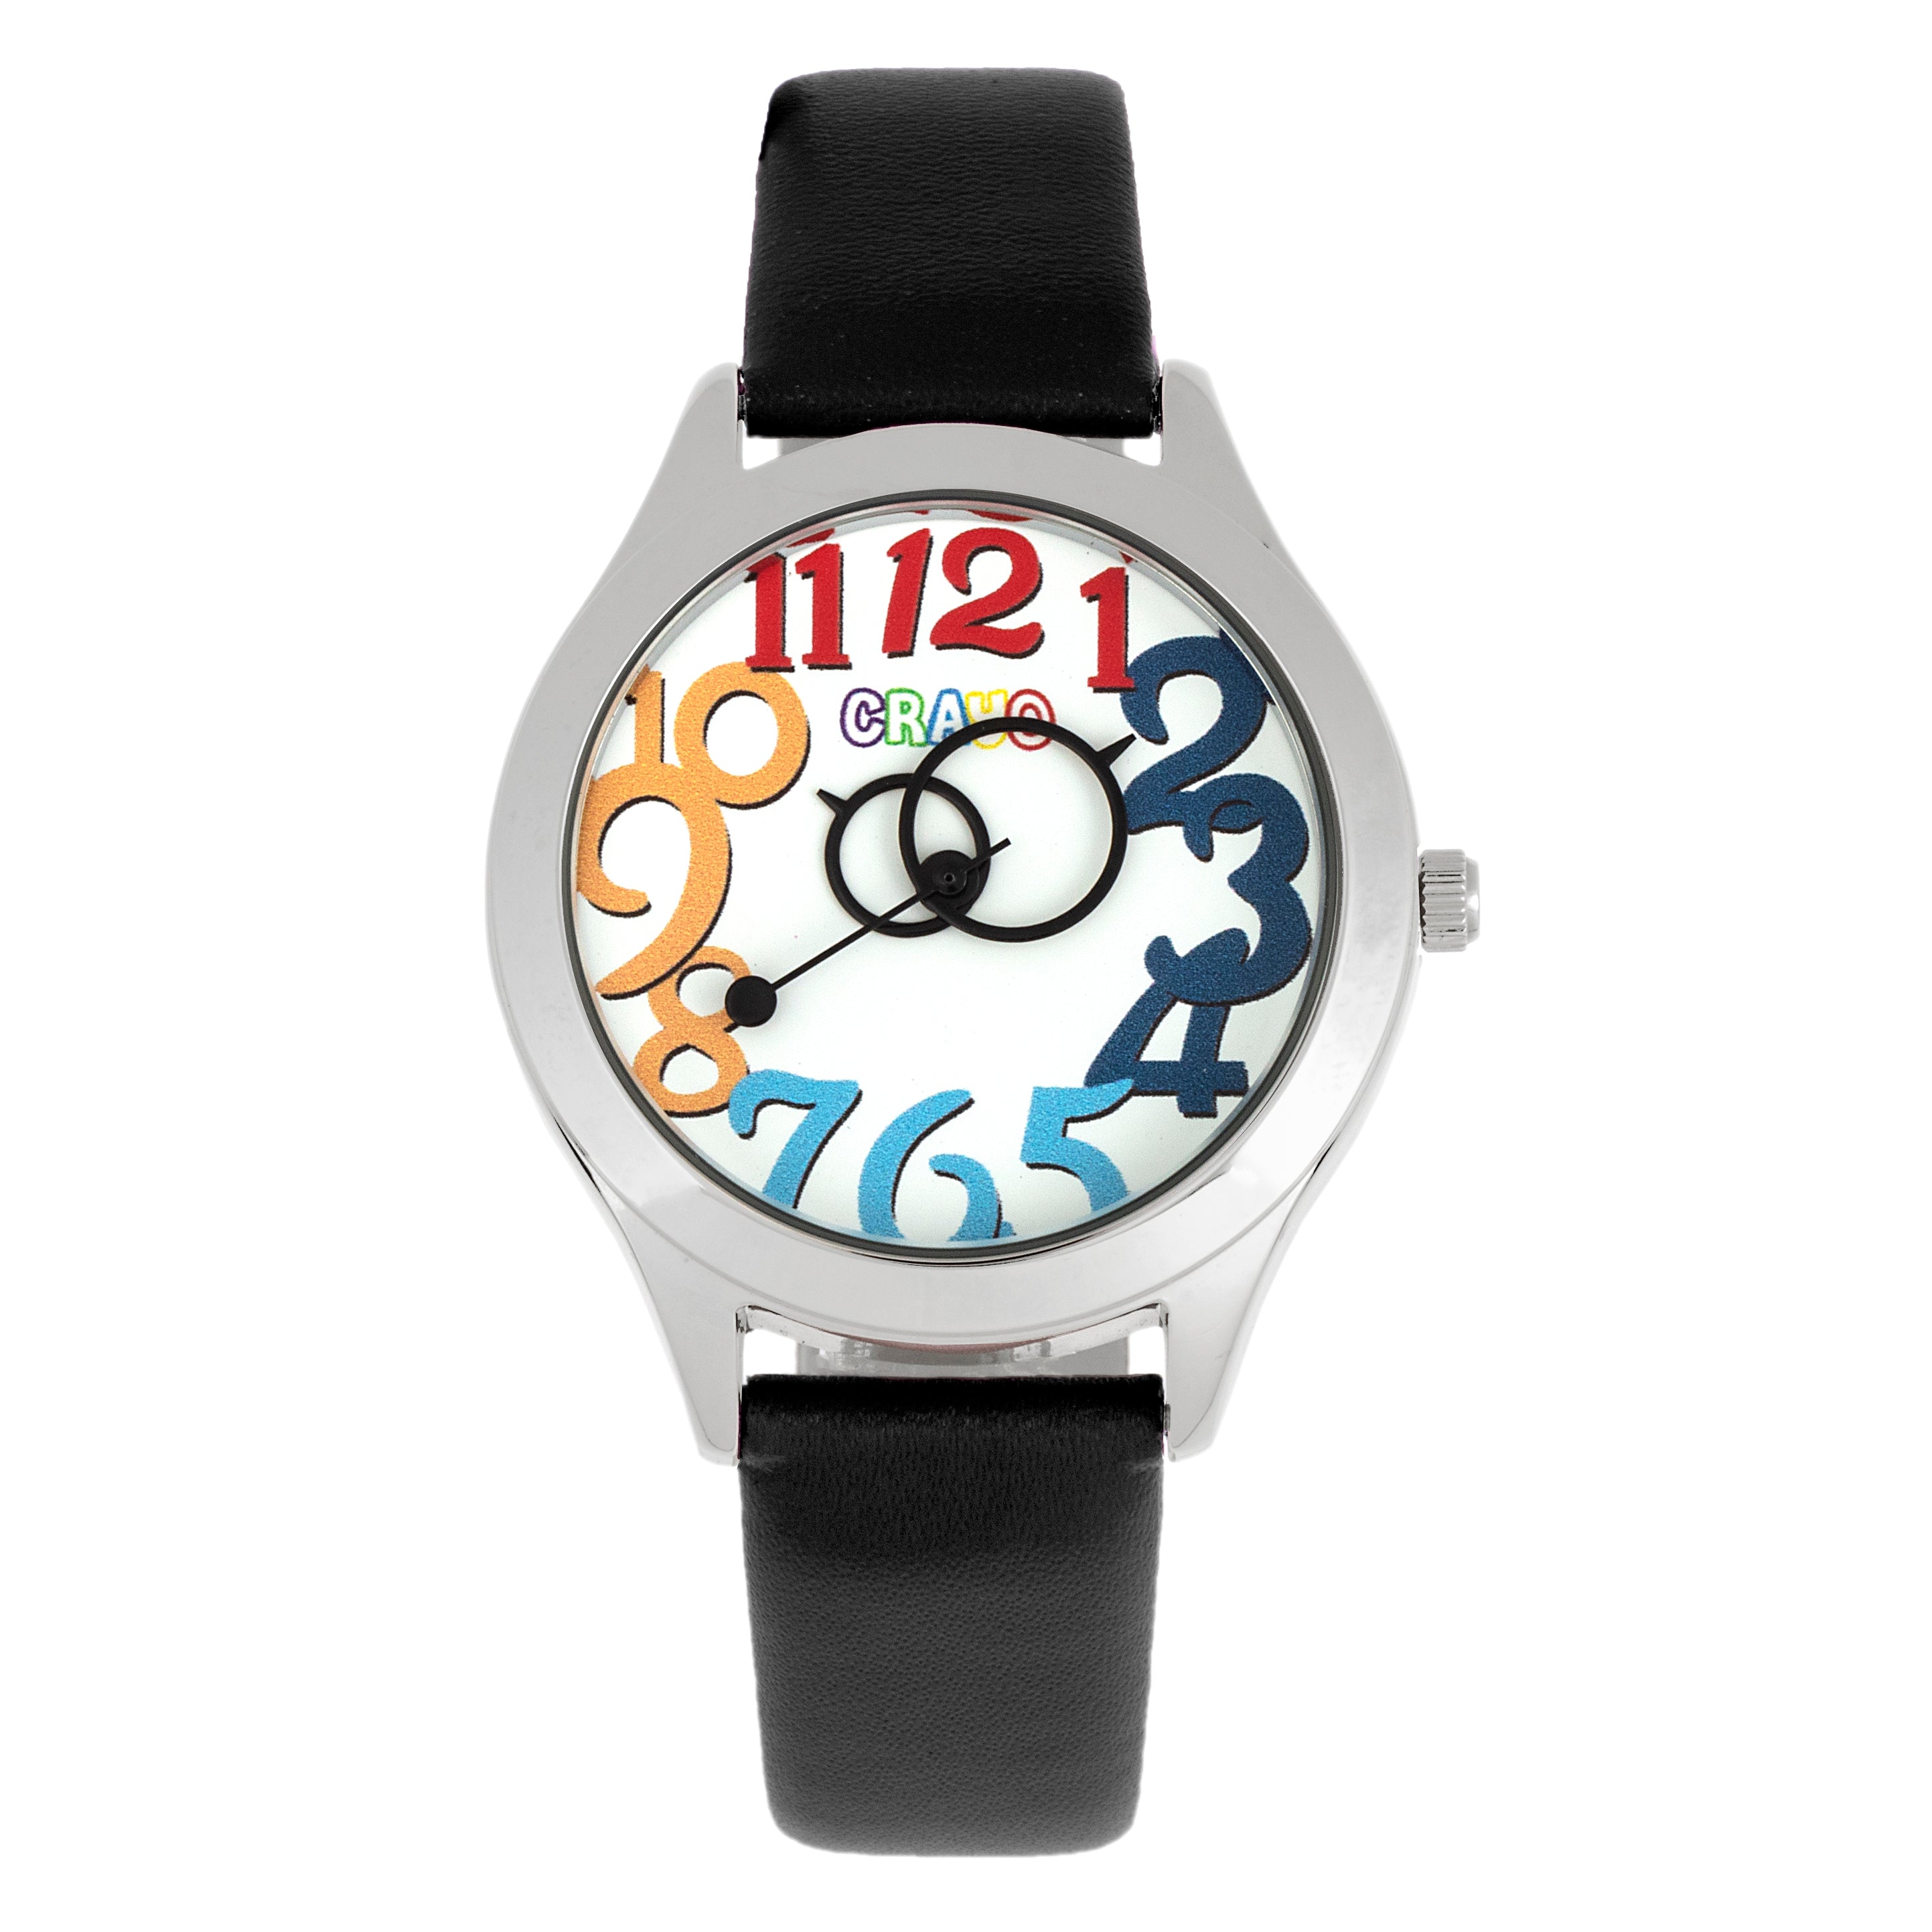 Crayo Spirit Unisex Watch - Black - CRACR5501